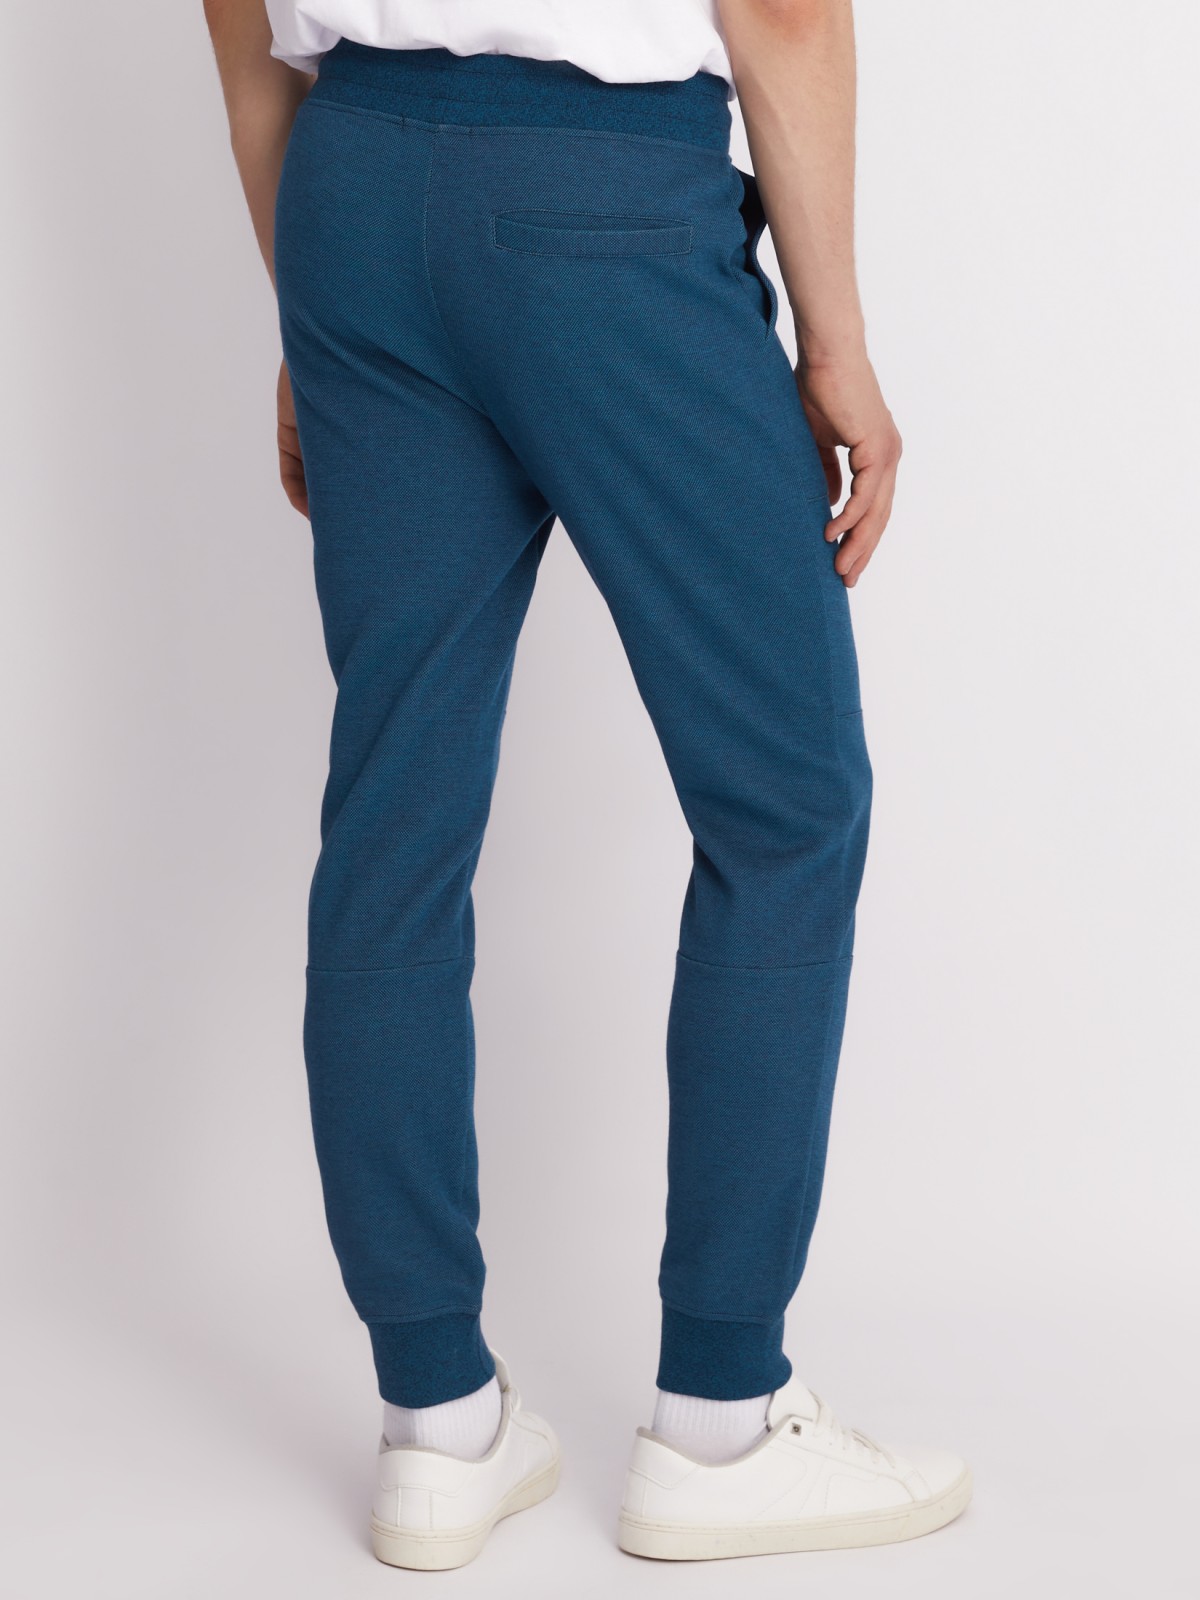 Трикотажные брюки-джоггеры в спортивном стиле zolla 213317604053, цвет бирюзовый, размер S - фото 6